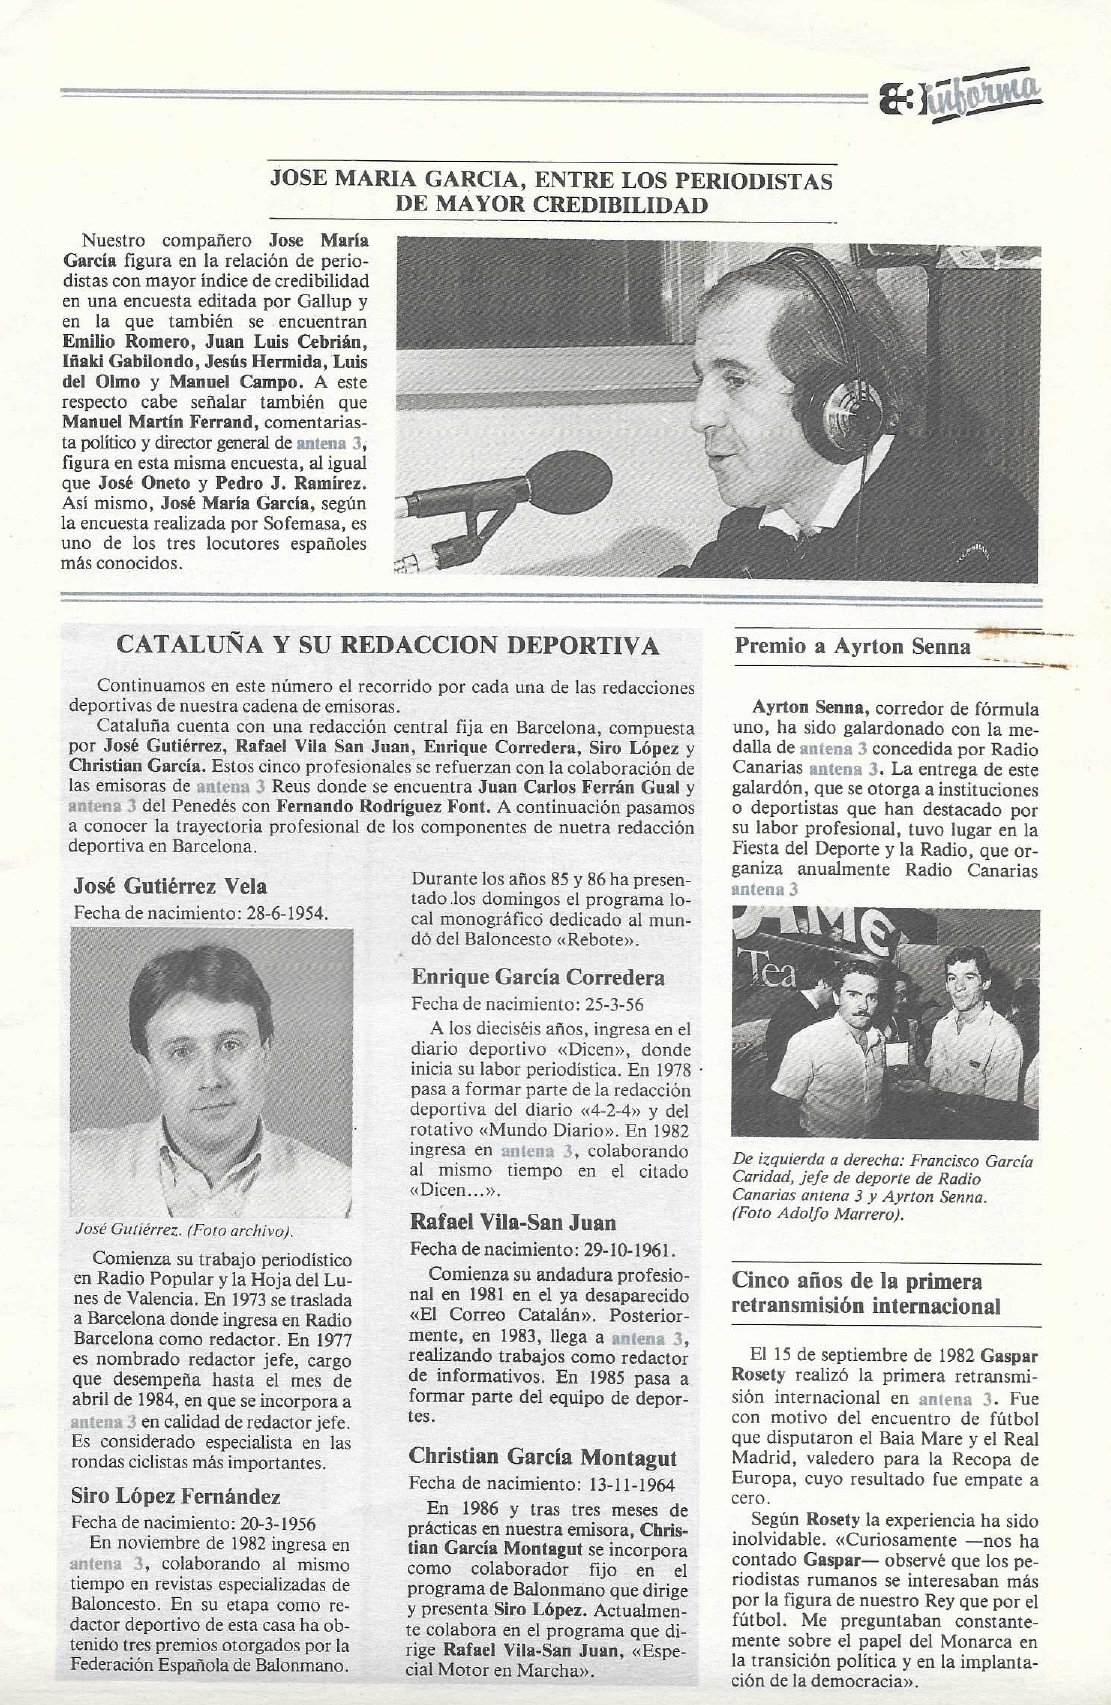 Extracte de diari en el que es parla d'el Christian Garcia